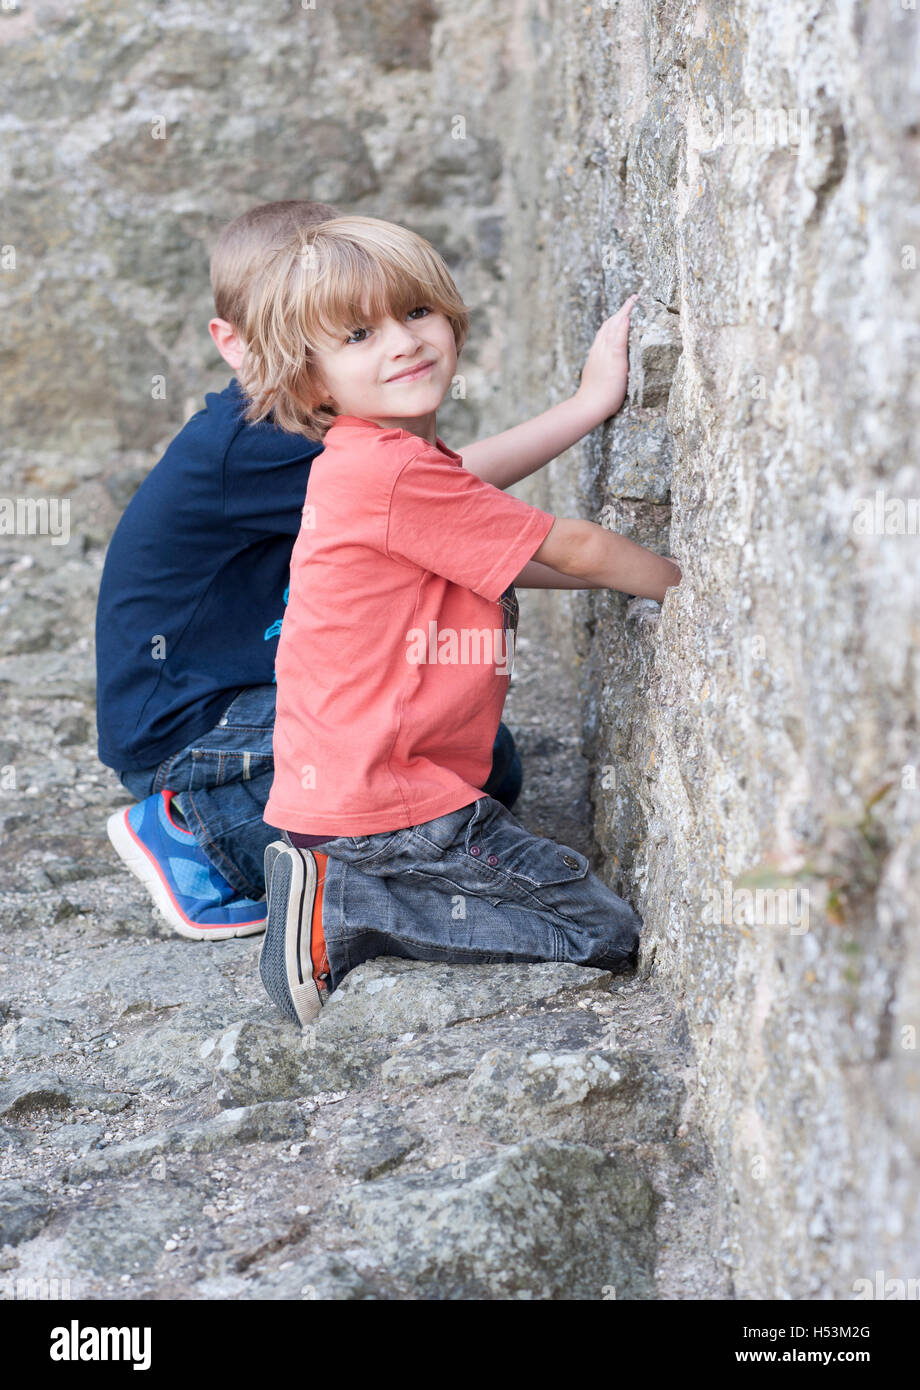 Les garçons sur les différentes fonctionnalités de l'historique château de Montgomery au milieu de galles, Shropshire/Galles frontières Banque D'Images